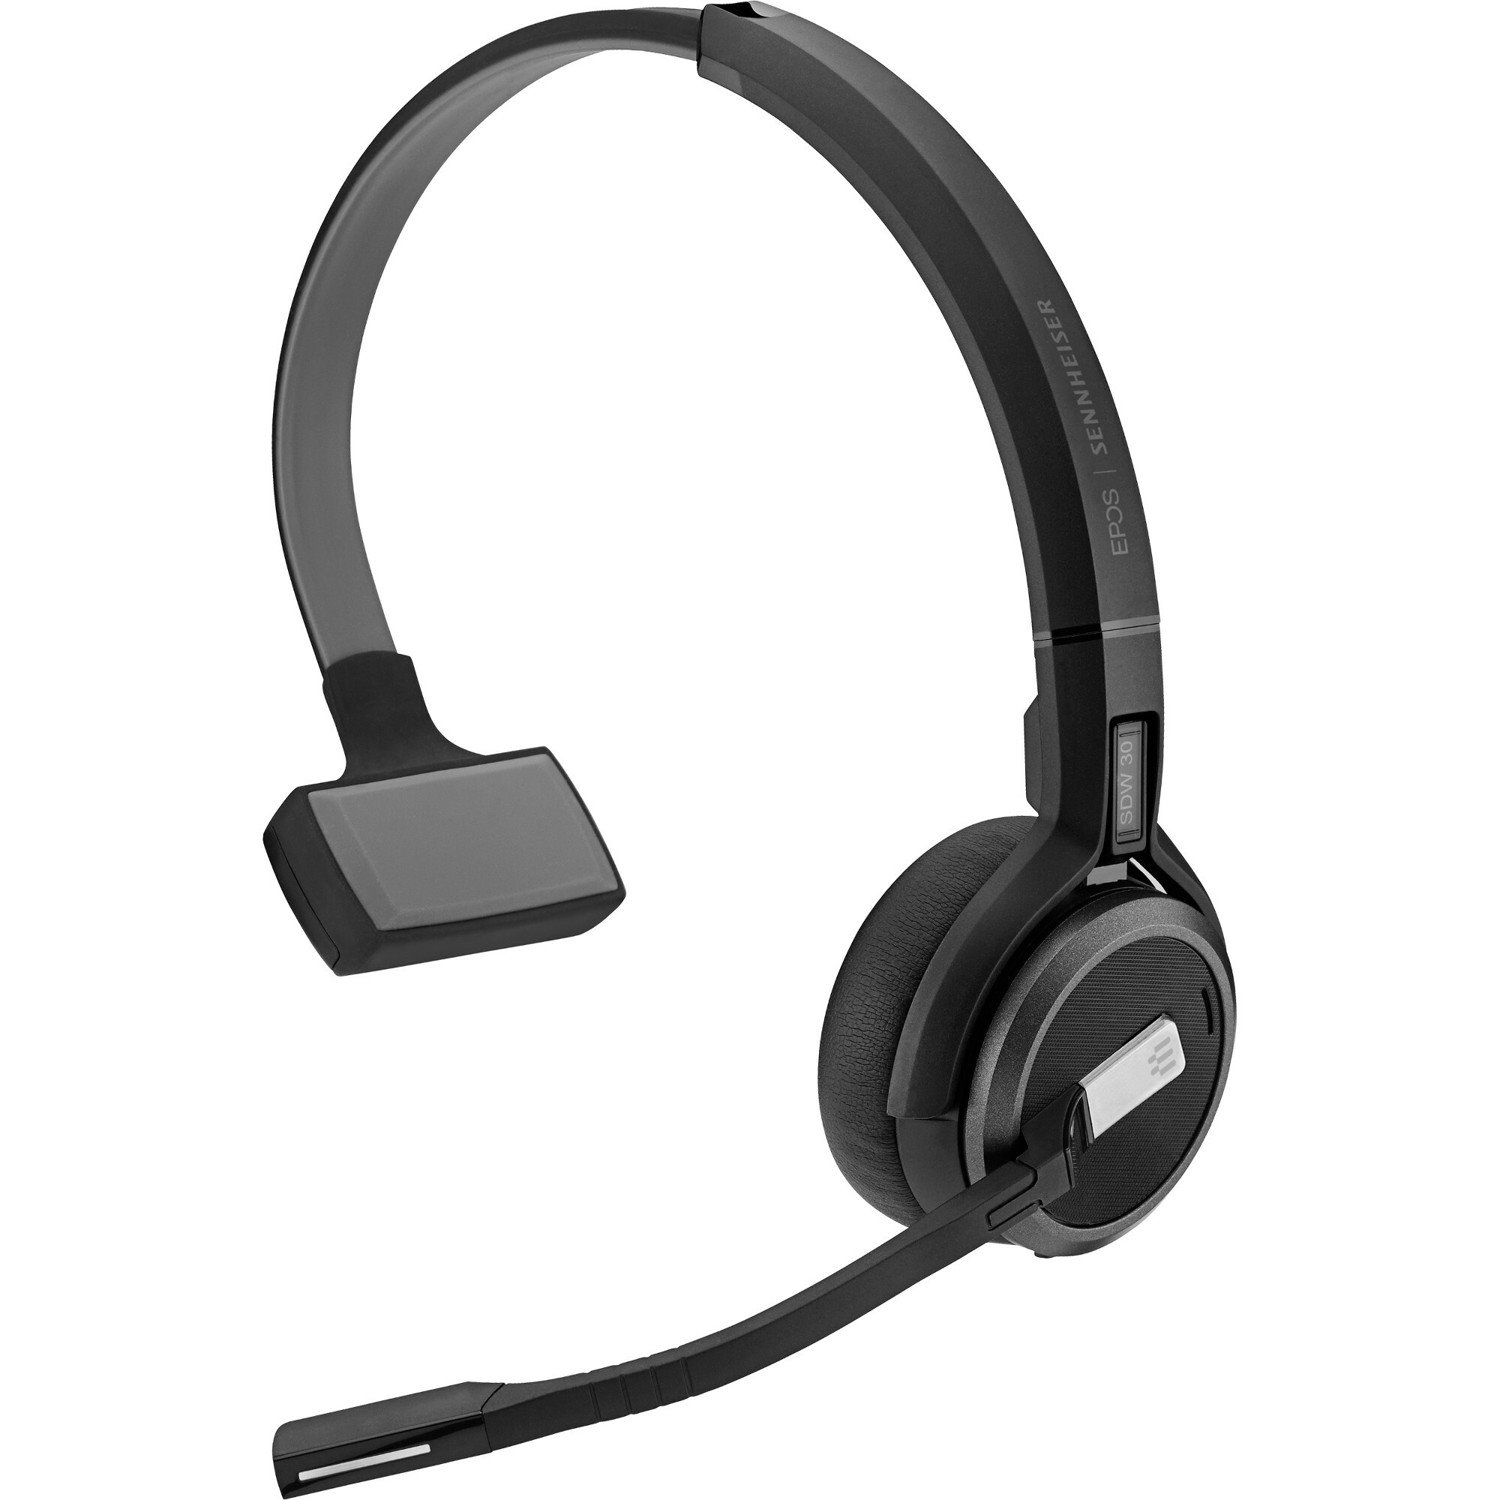 EPOS IMPACT SDW 5036 - AUS Wireless On-ear Mono Headset - Black